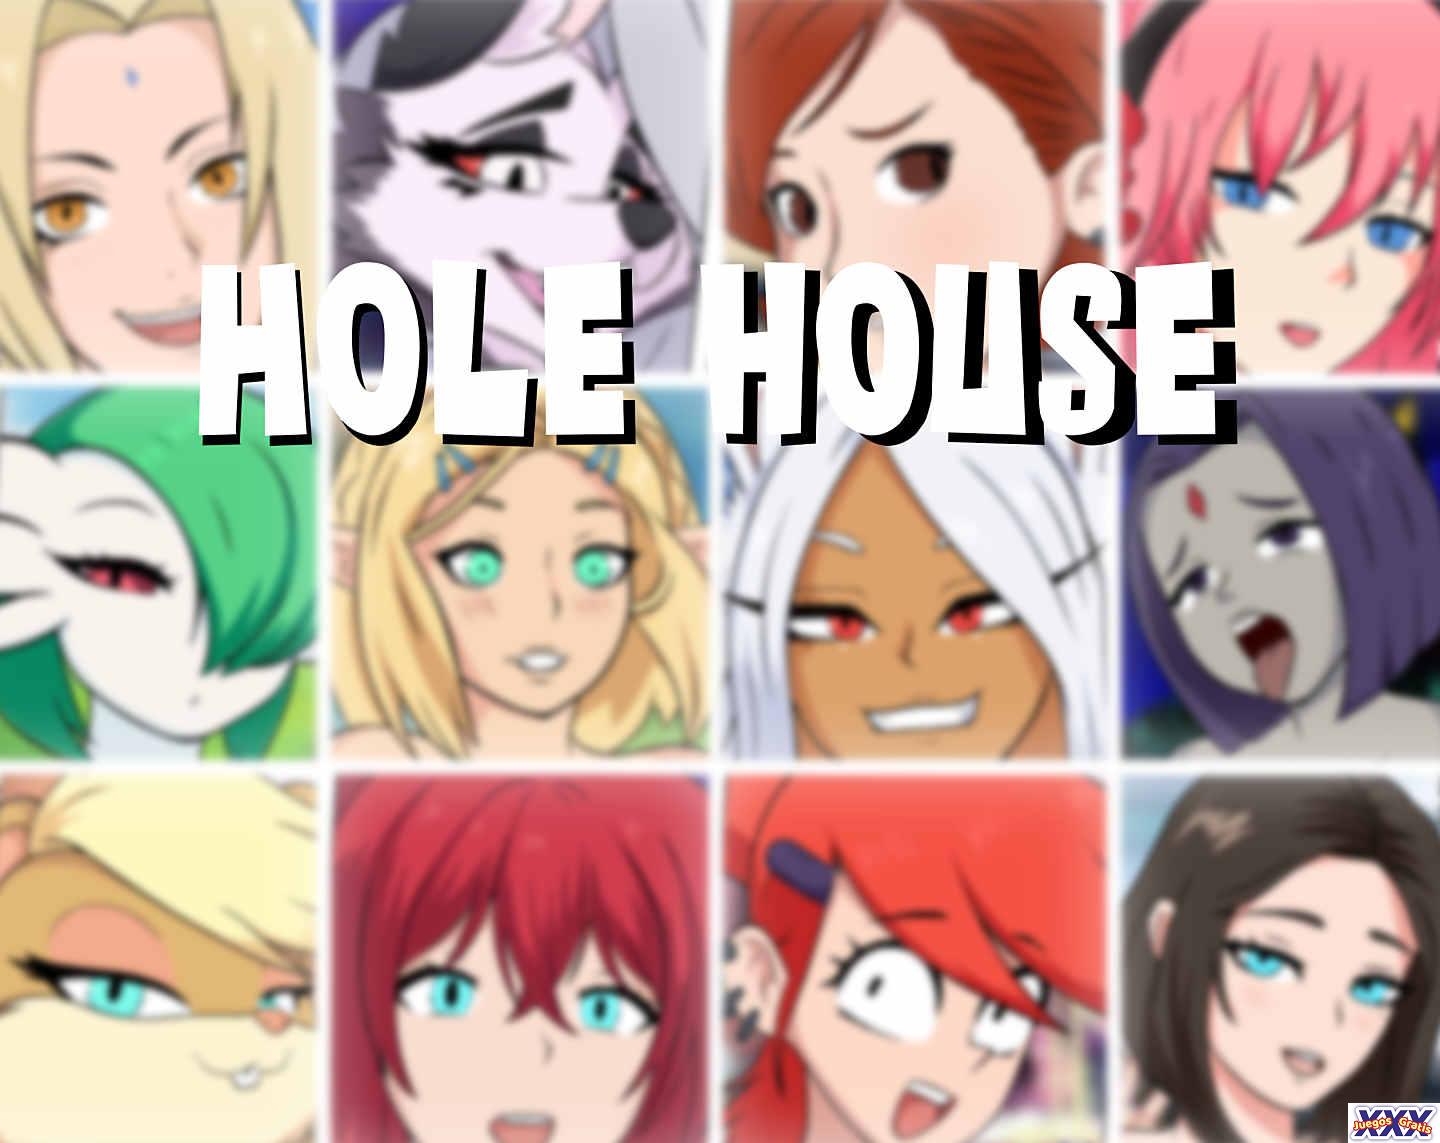 HOLE HOUSE [V0.1.61] [DOTART]